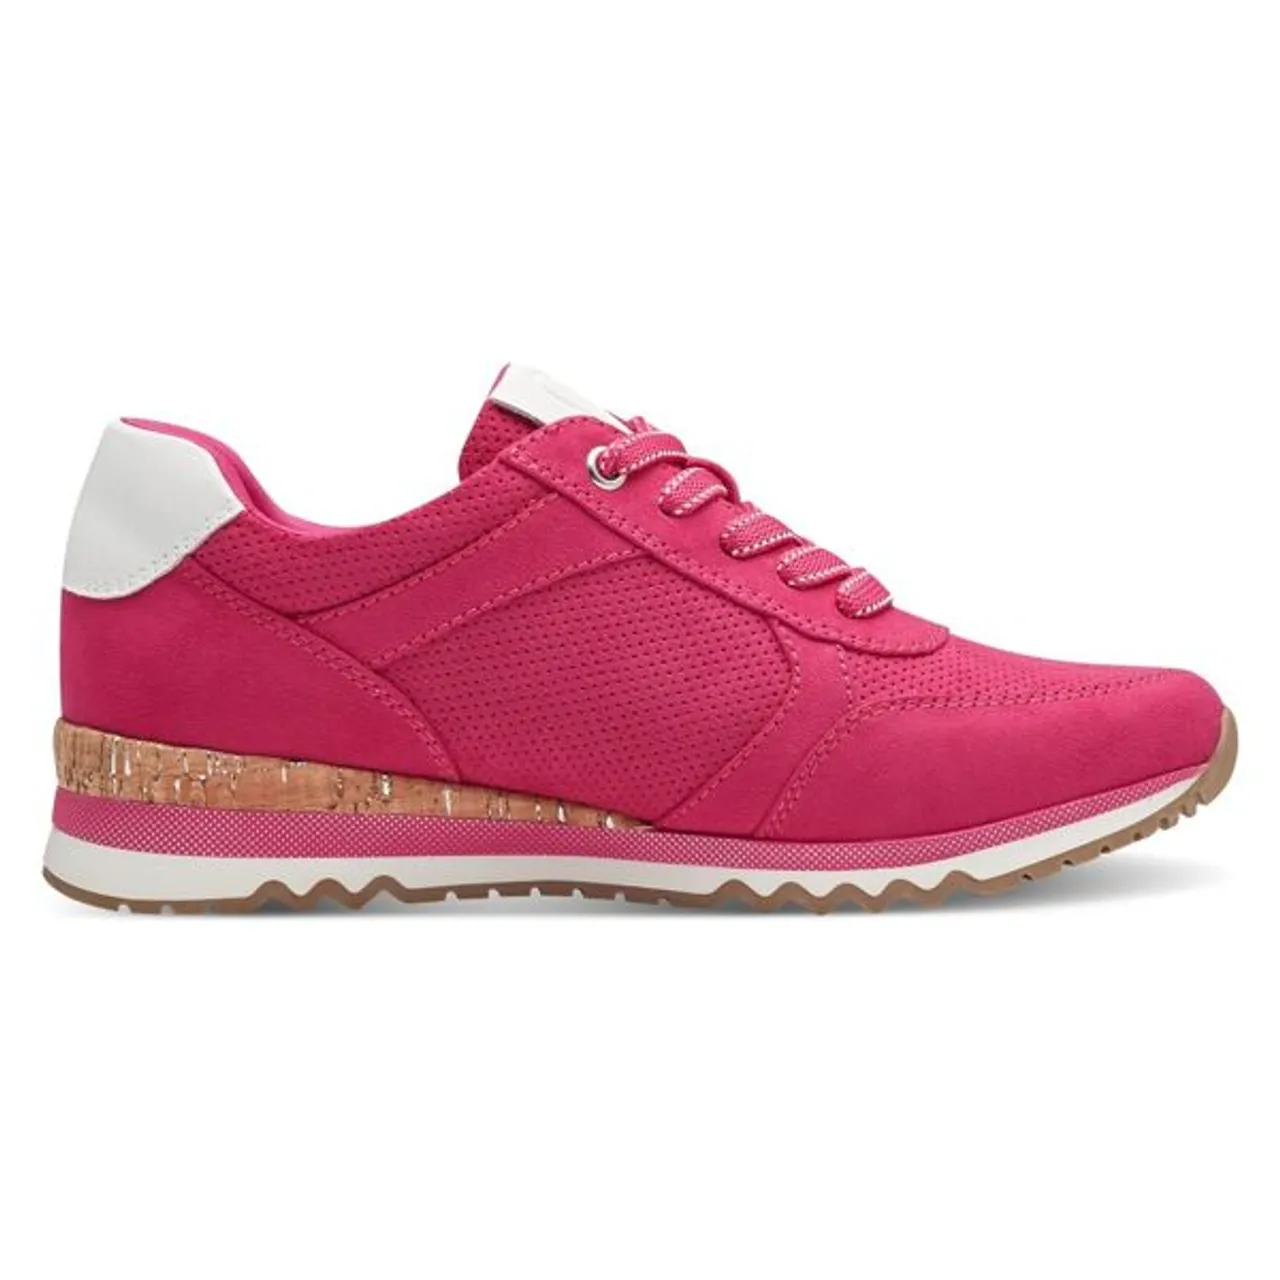 Keilsneaker MARCO TOZZI Gr. 41, pink Damen Schuhe Sneaker